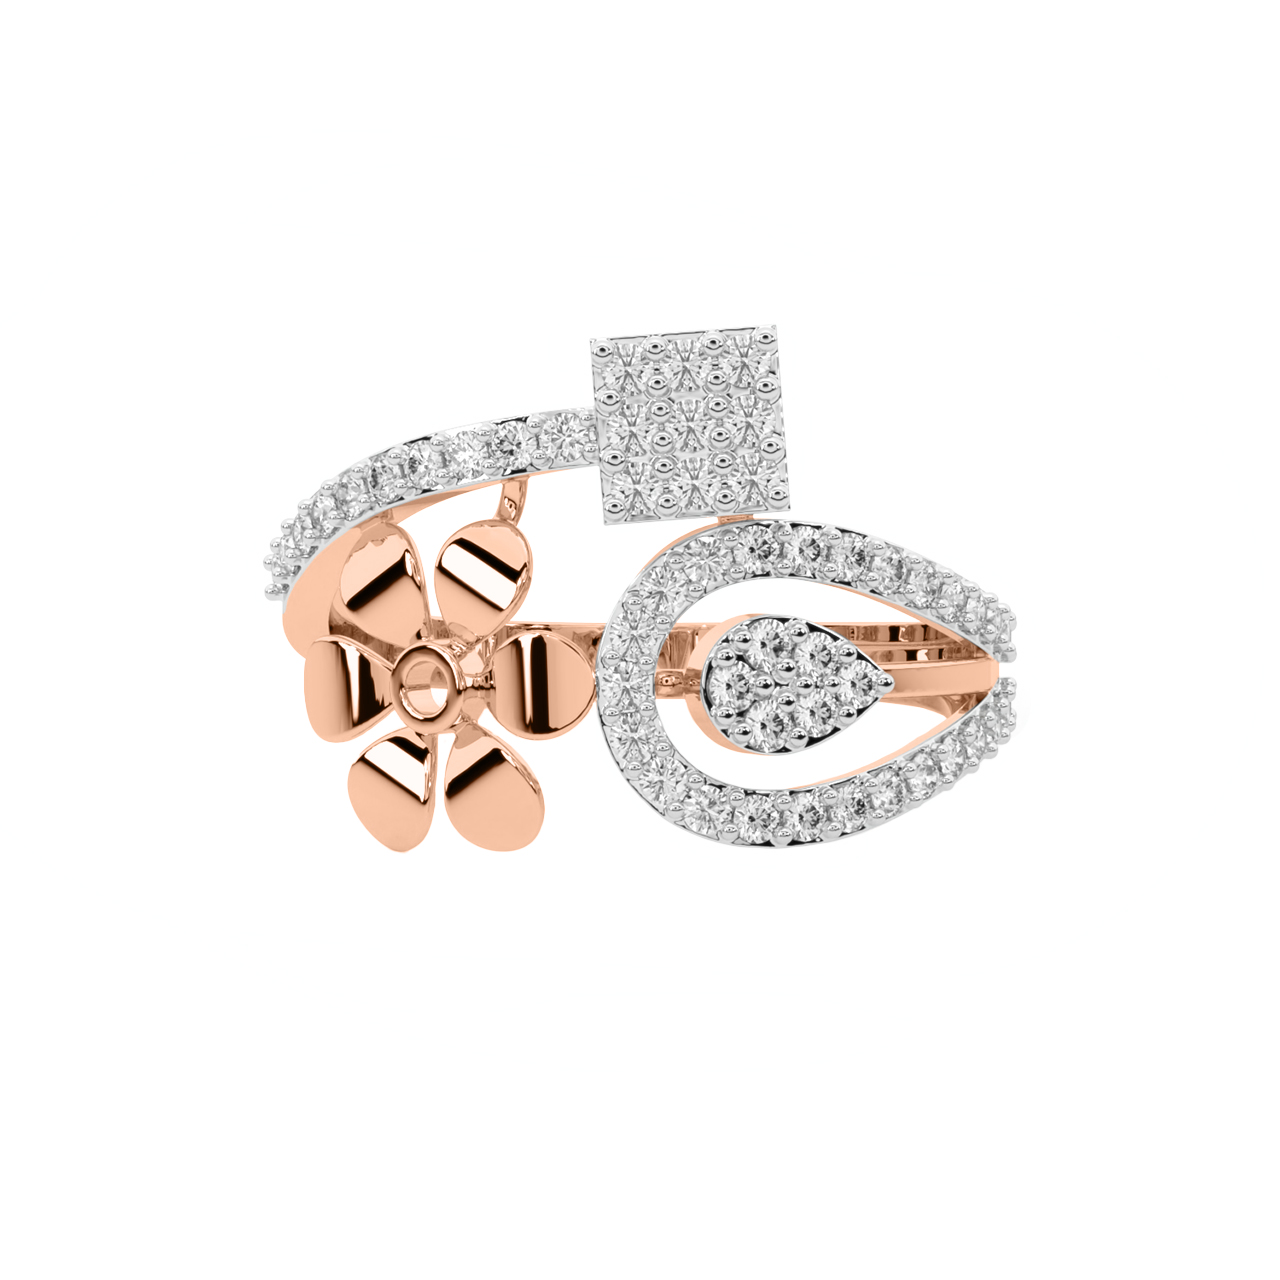 Seana Round Diamond Engagement Ring